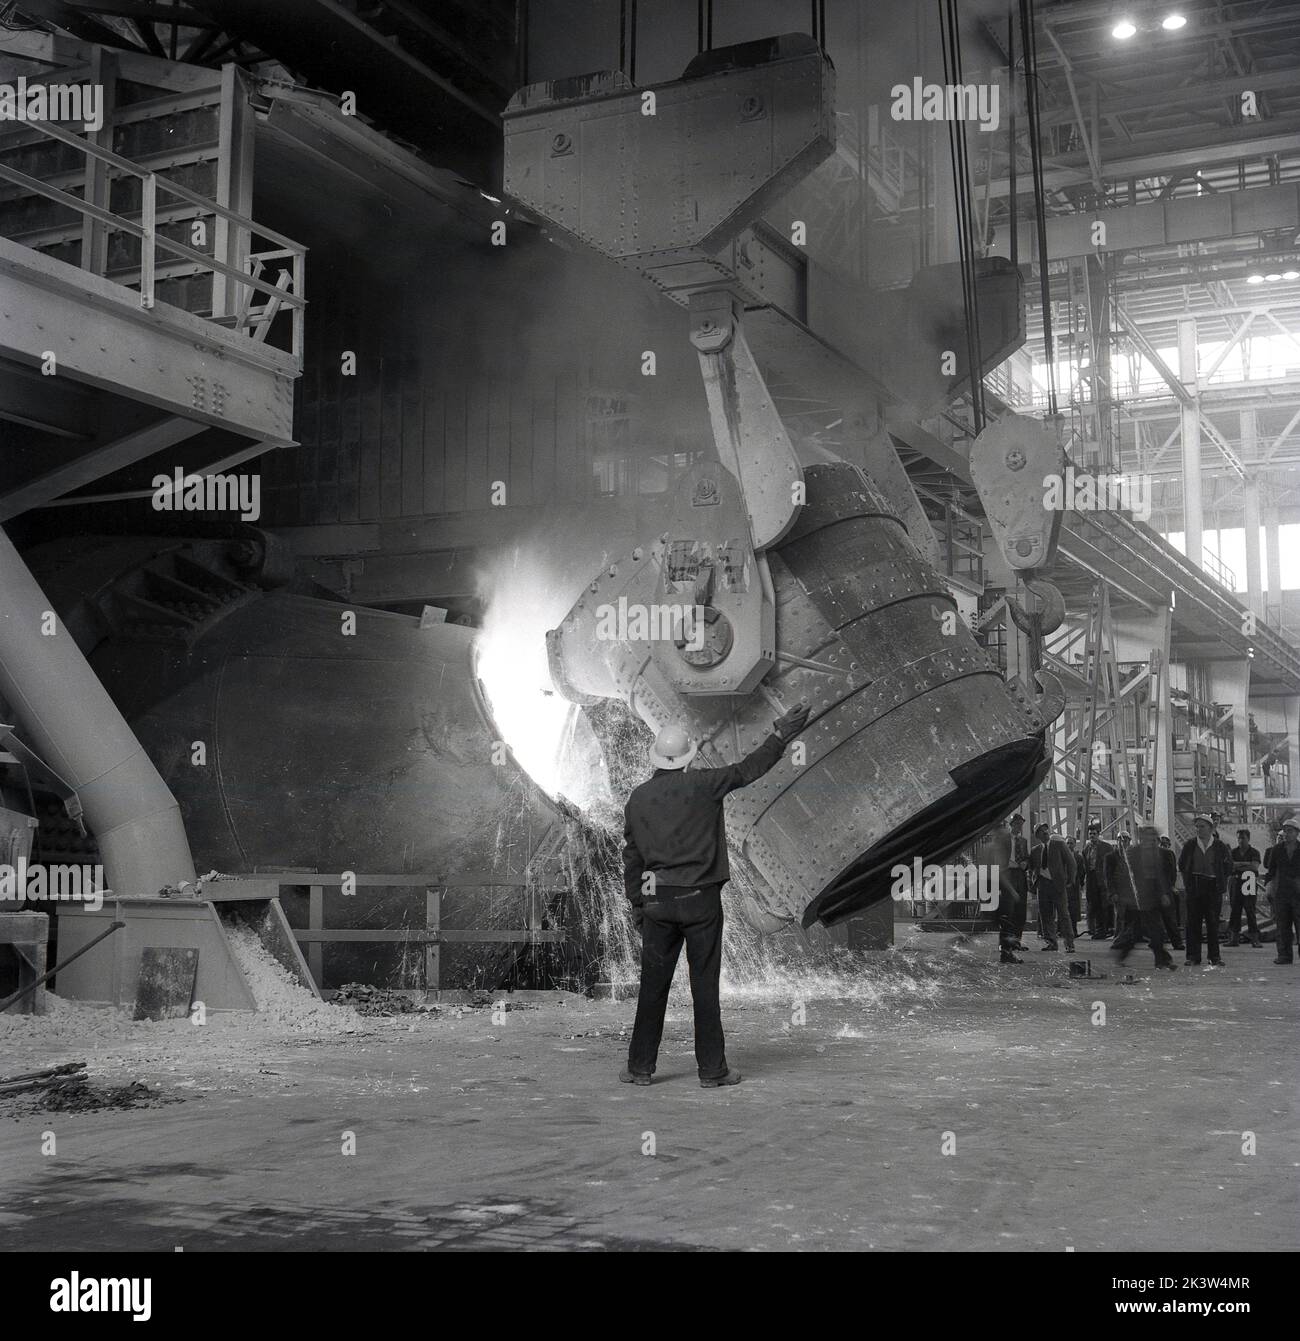 années 1950, historique, fabrication de l'acier.... À l'intérieur d'un hangar industriel géant, un ouvrier de l'acier supervisant un grand baril de minerai de fer fondu versé dans un haut fourneau de la Steel Company of Wales, Abbey Works, Port Talbot, pays de Galles, Royaume-Uni. Banque D'Images